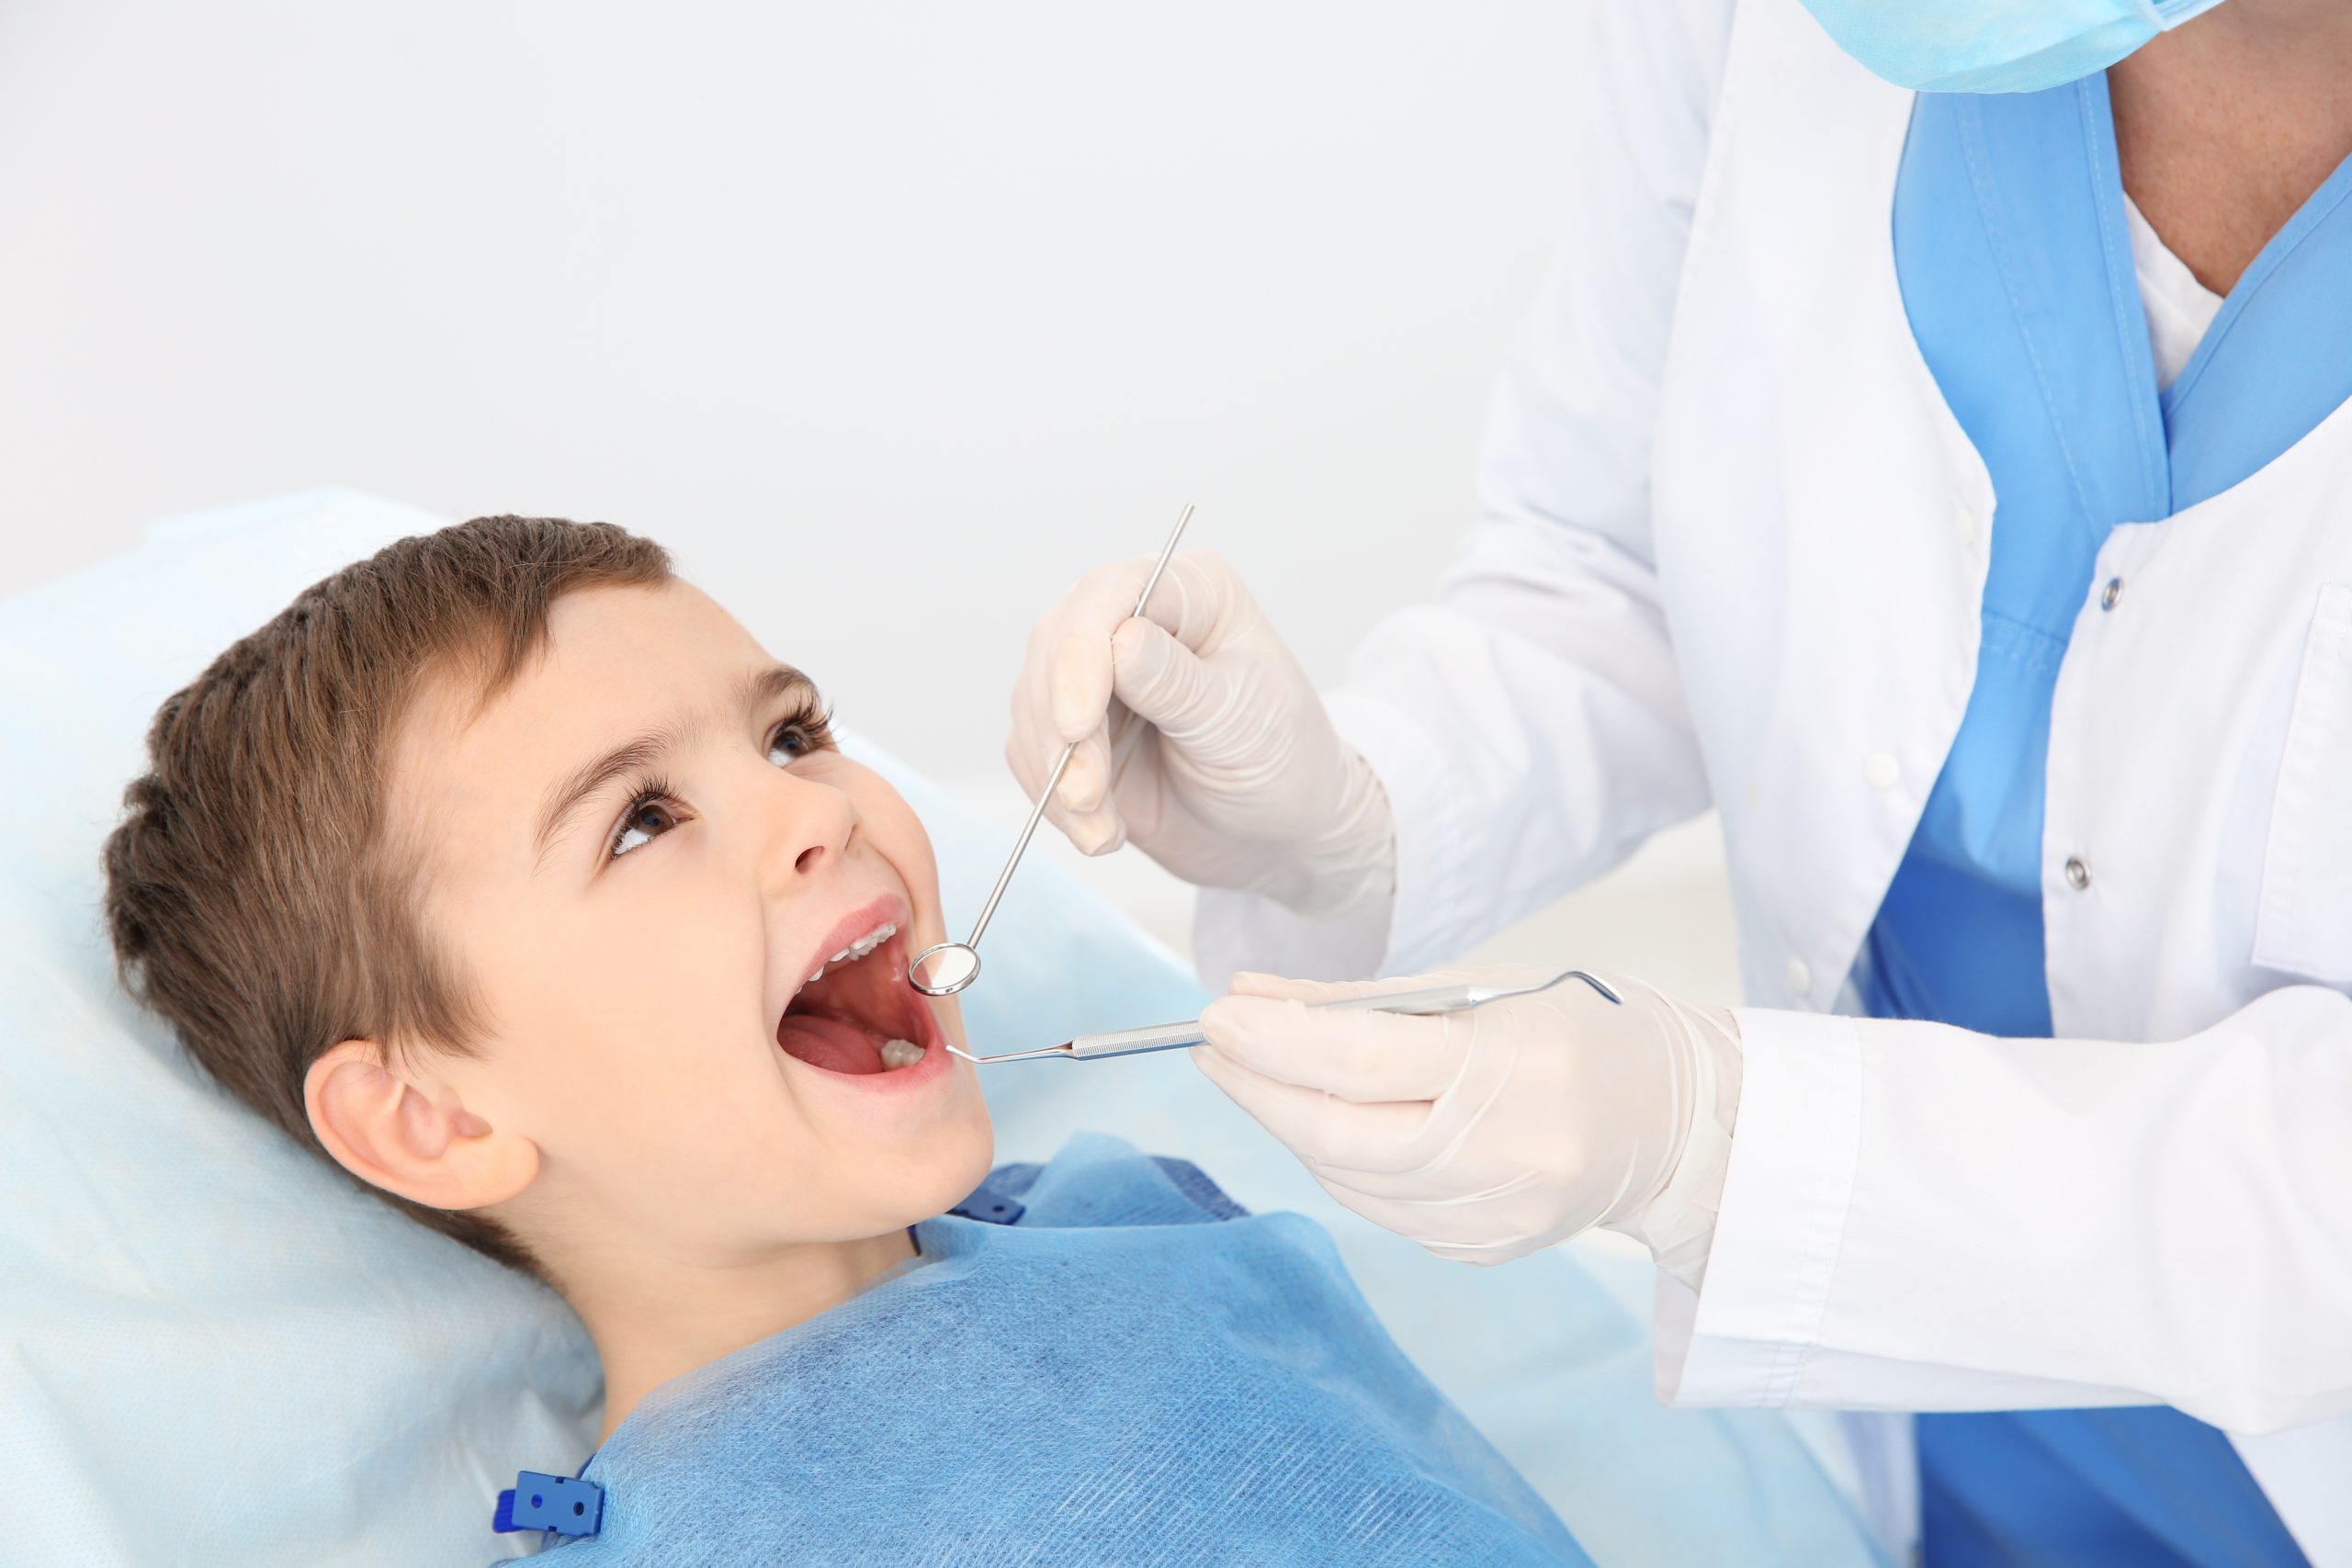 Dentist examining cute boy's teeth in modern clinic